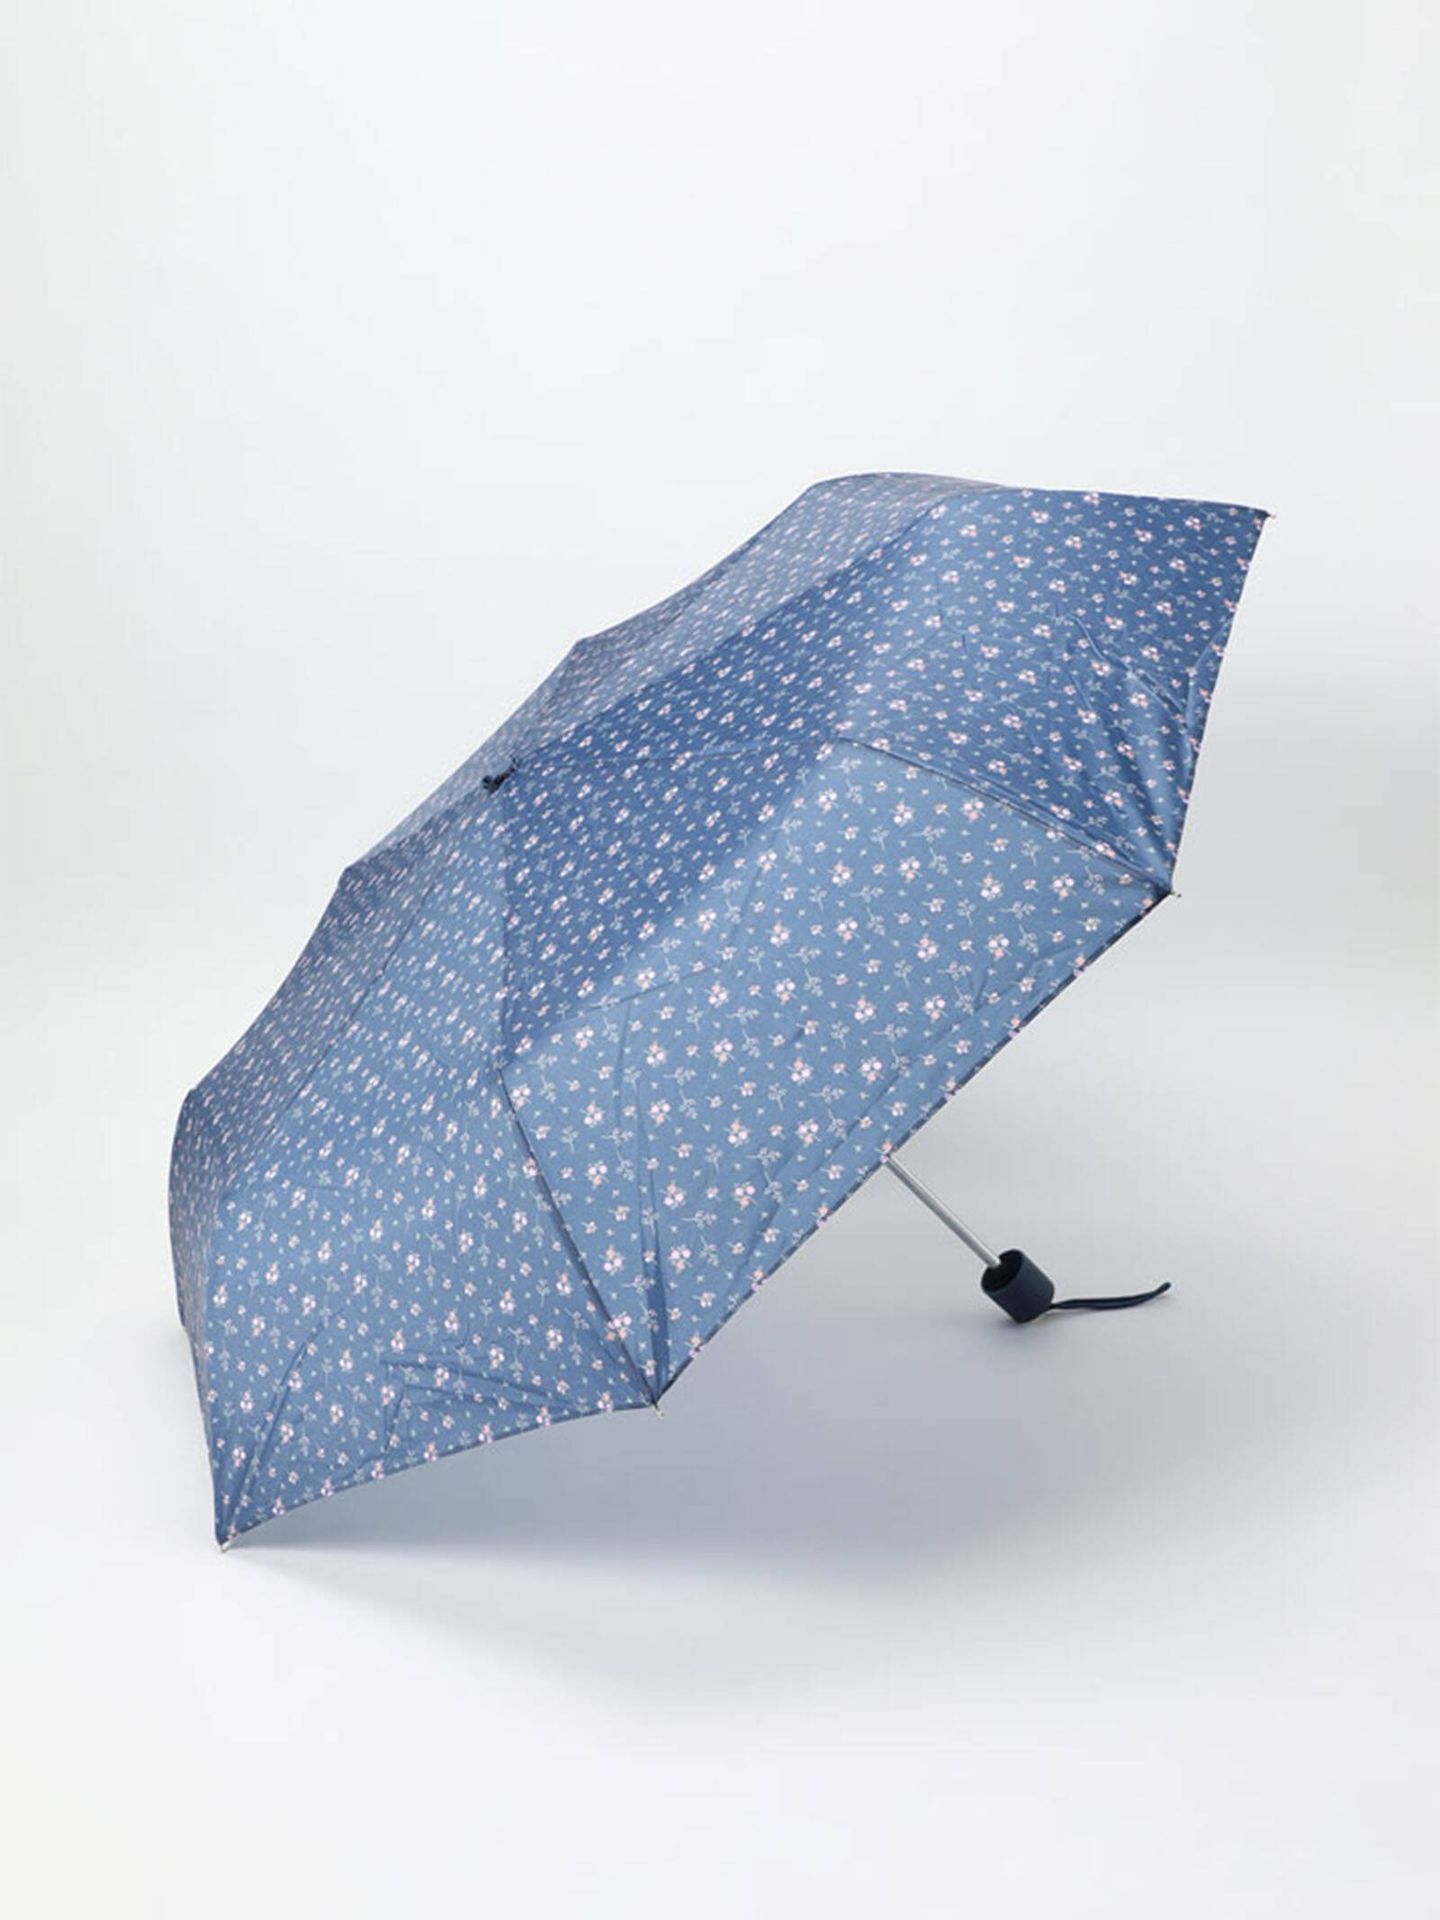 Paraguas básico para un día de lluvia. (Lefties/Cortesía)